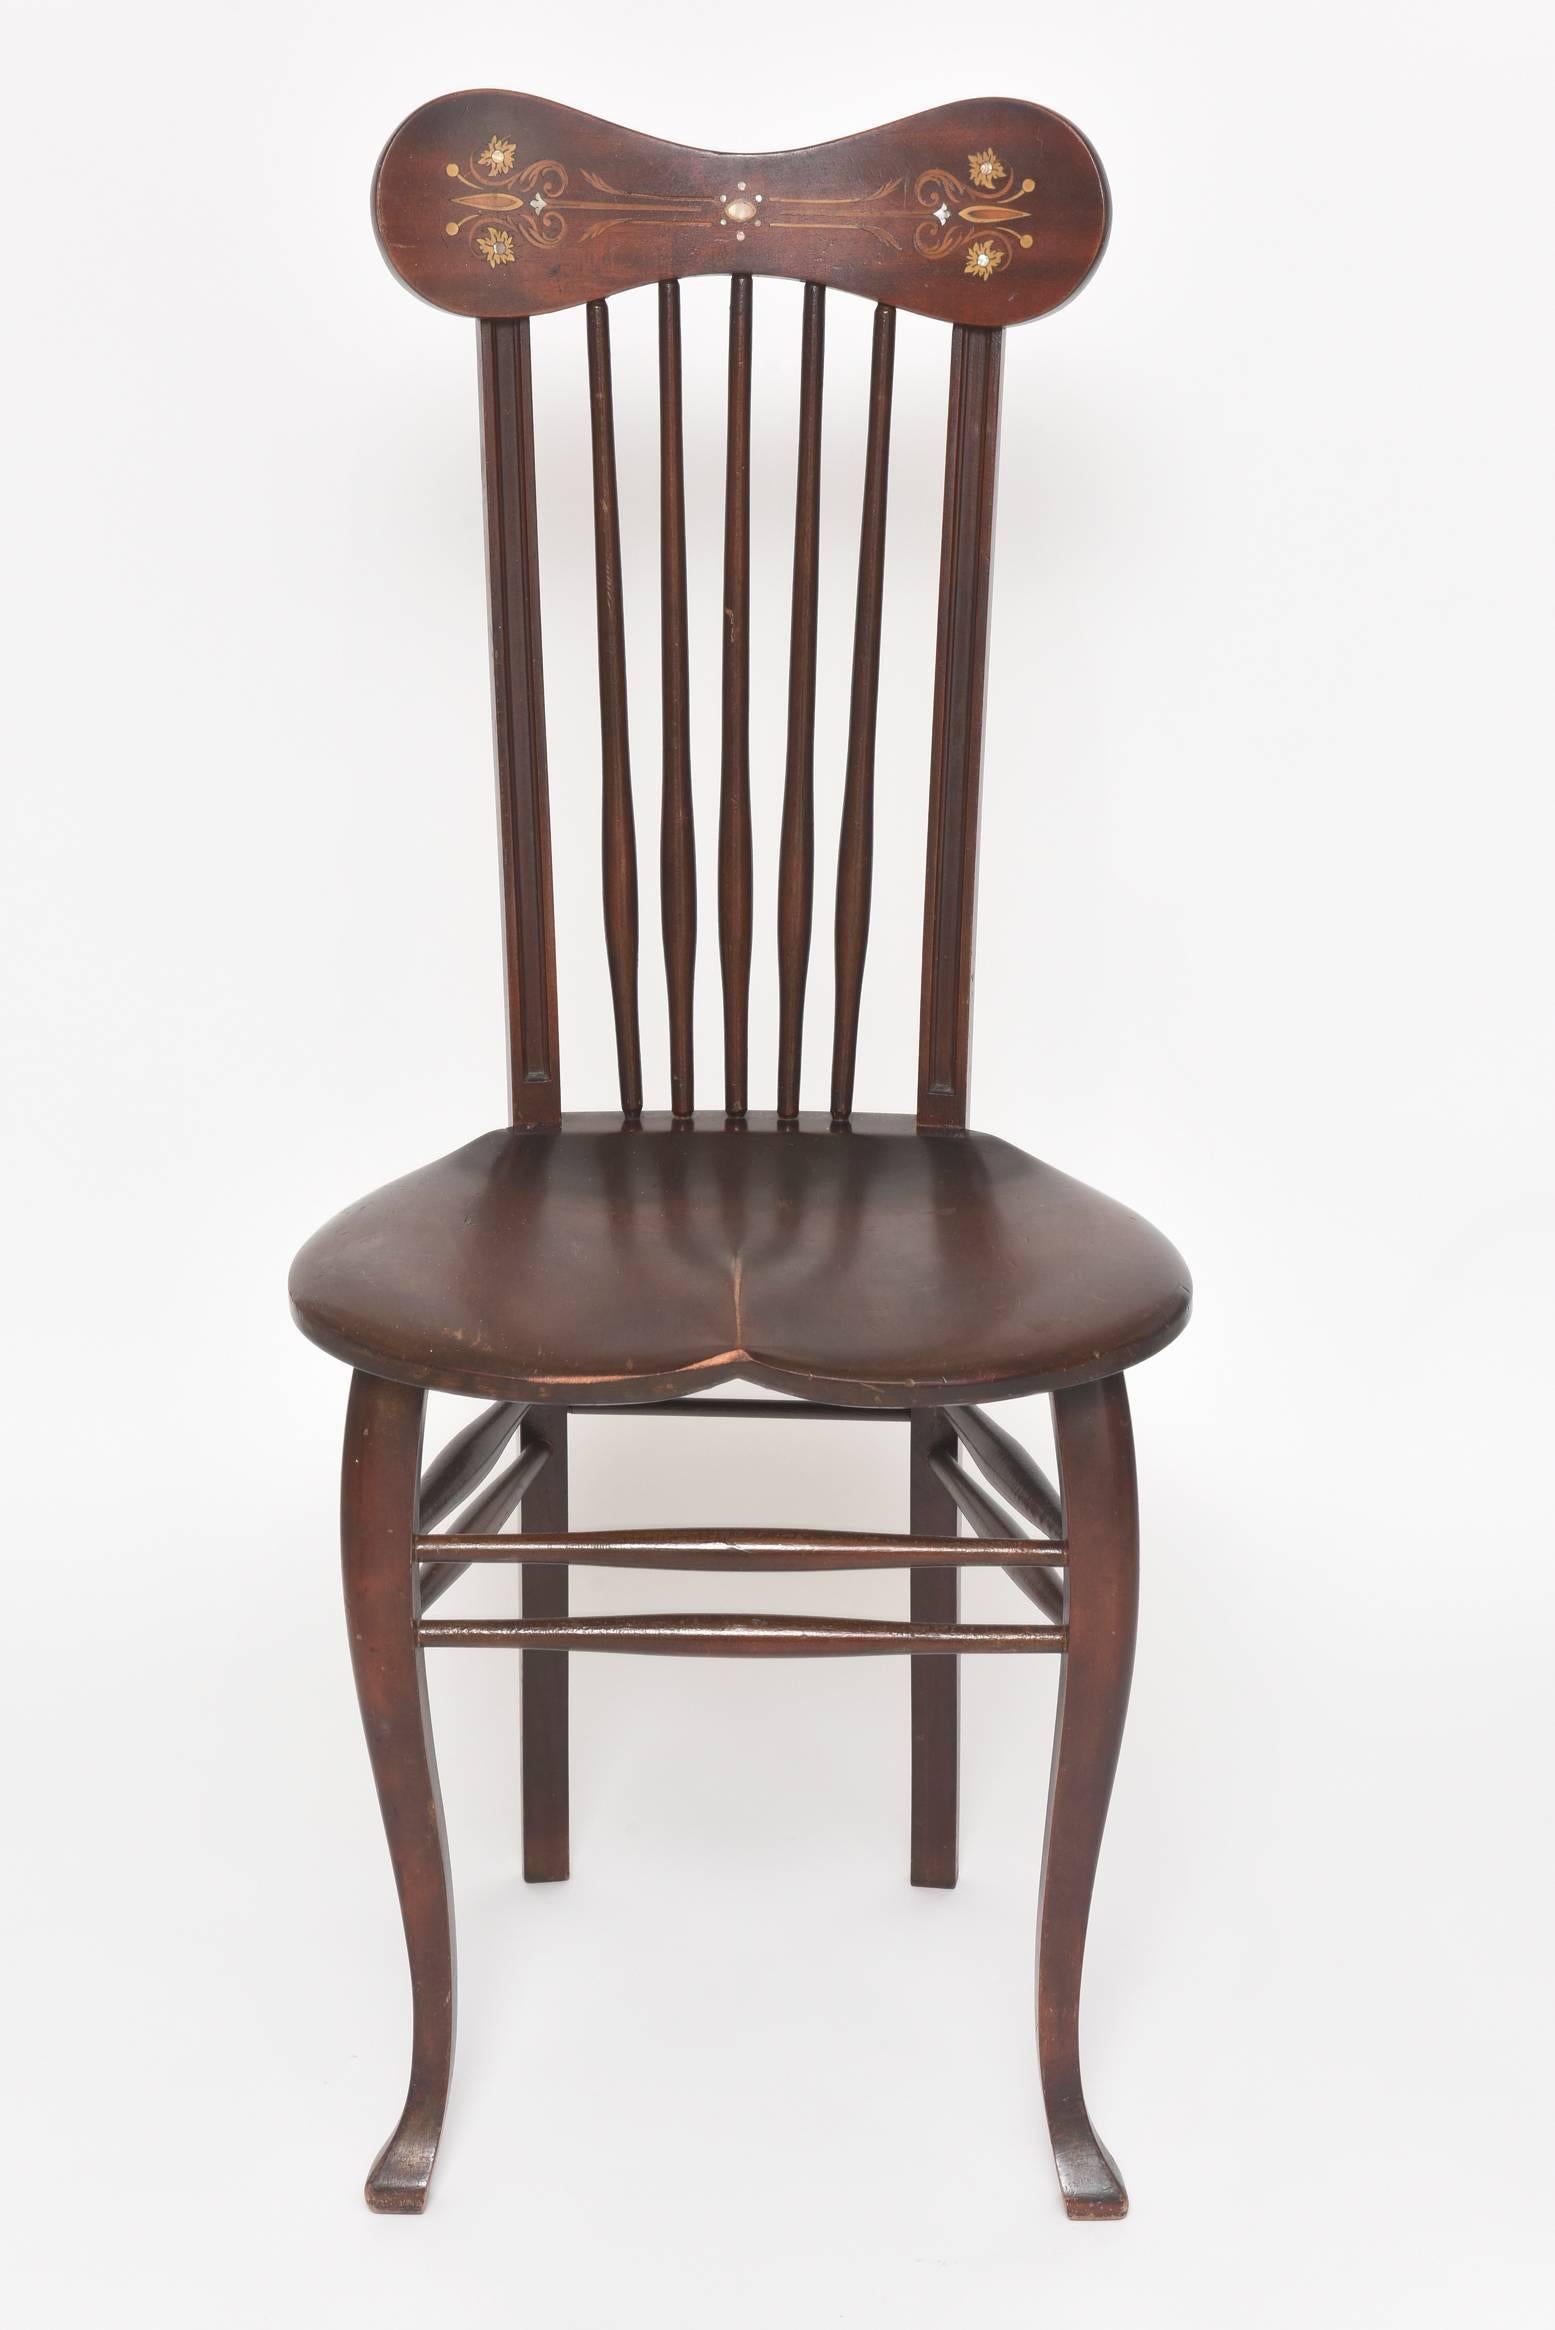 windsor-Stuhl aus dem 19. Jh. mit Perlmutt- und Intarsienverzierung auf dem oberen Kammteil, der mit einer Spindelrückenlehne verbunden ist, die an einem Sattelplattensitz mit gebogenen Vorderbeinen mit gepolsterten Füßen befestigt ist.